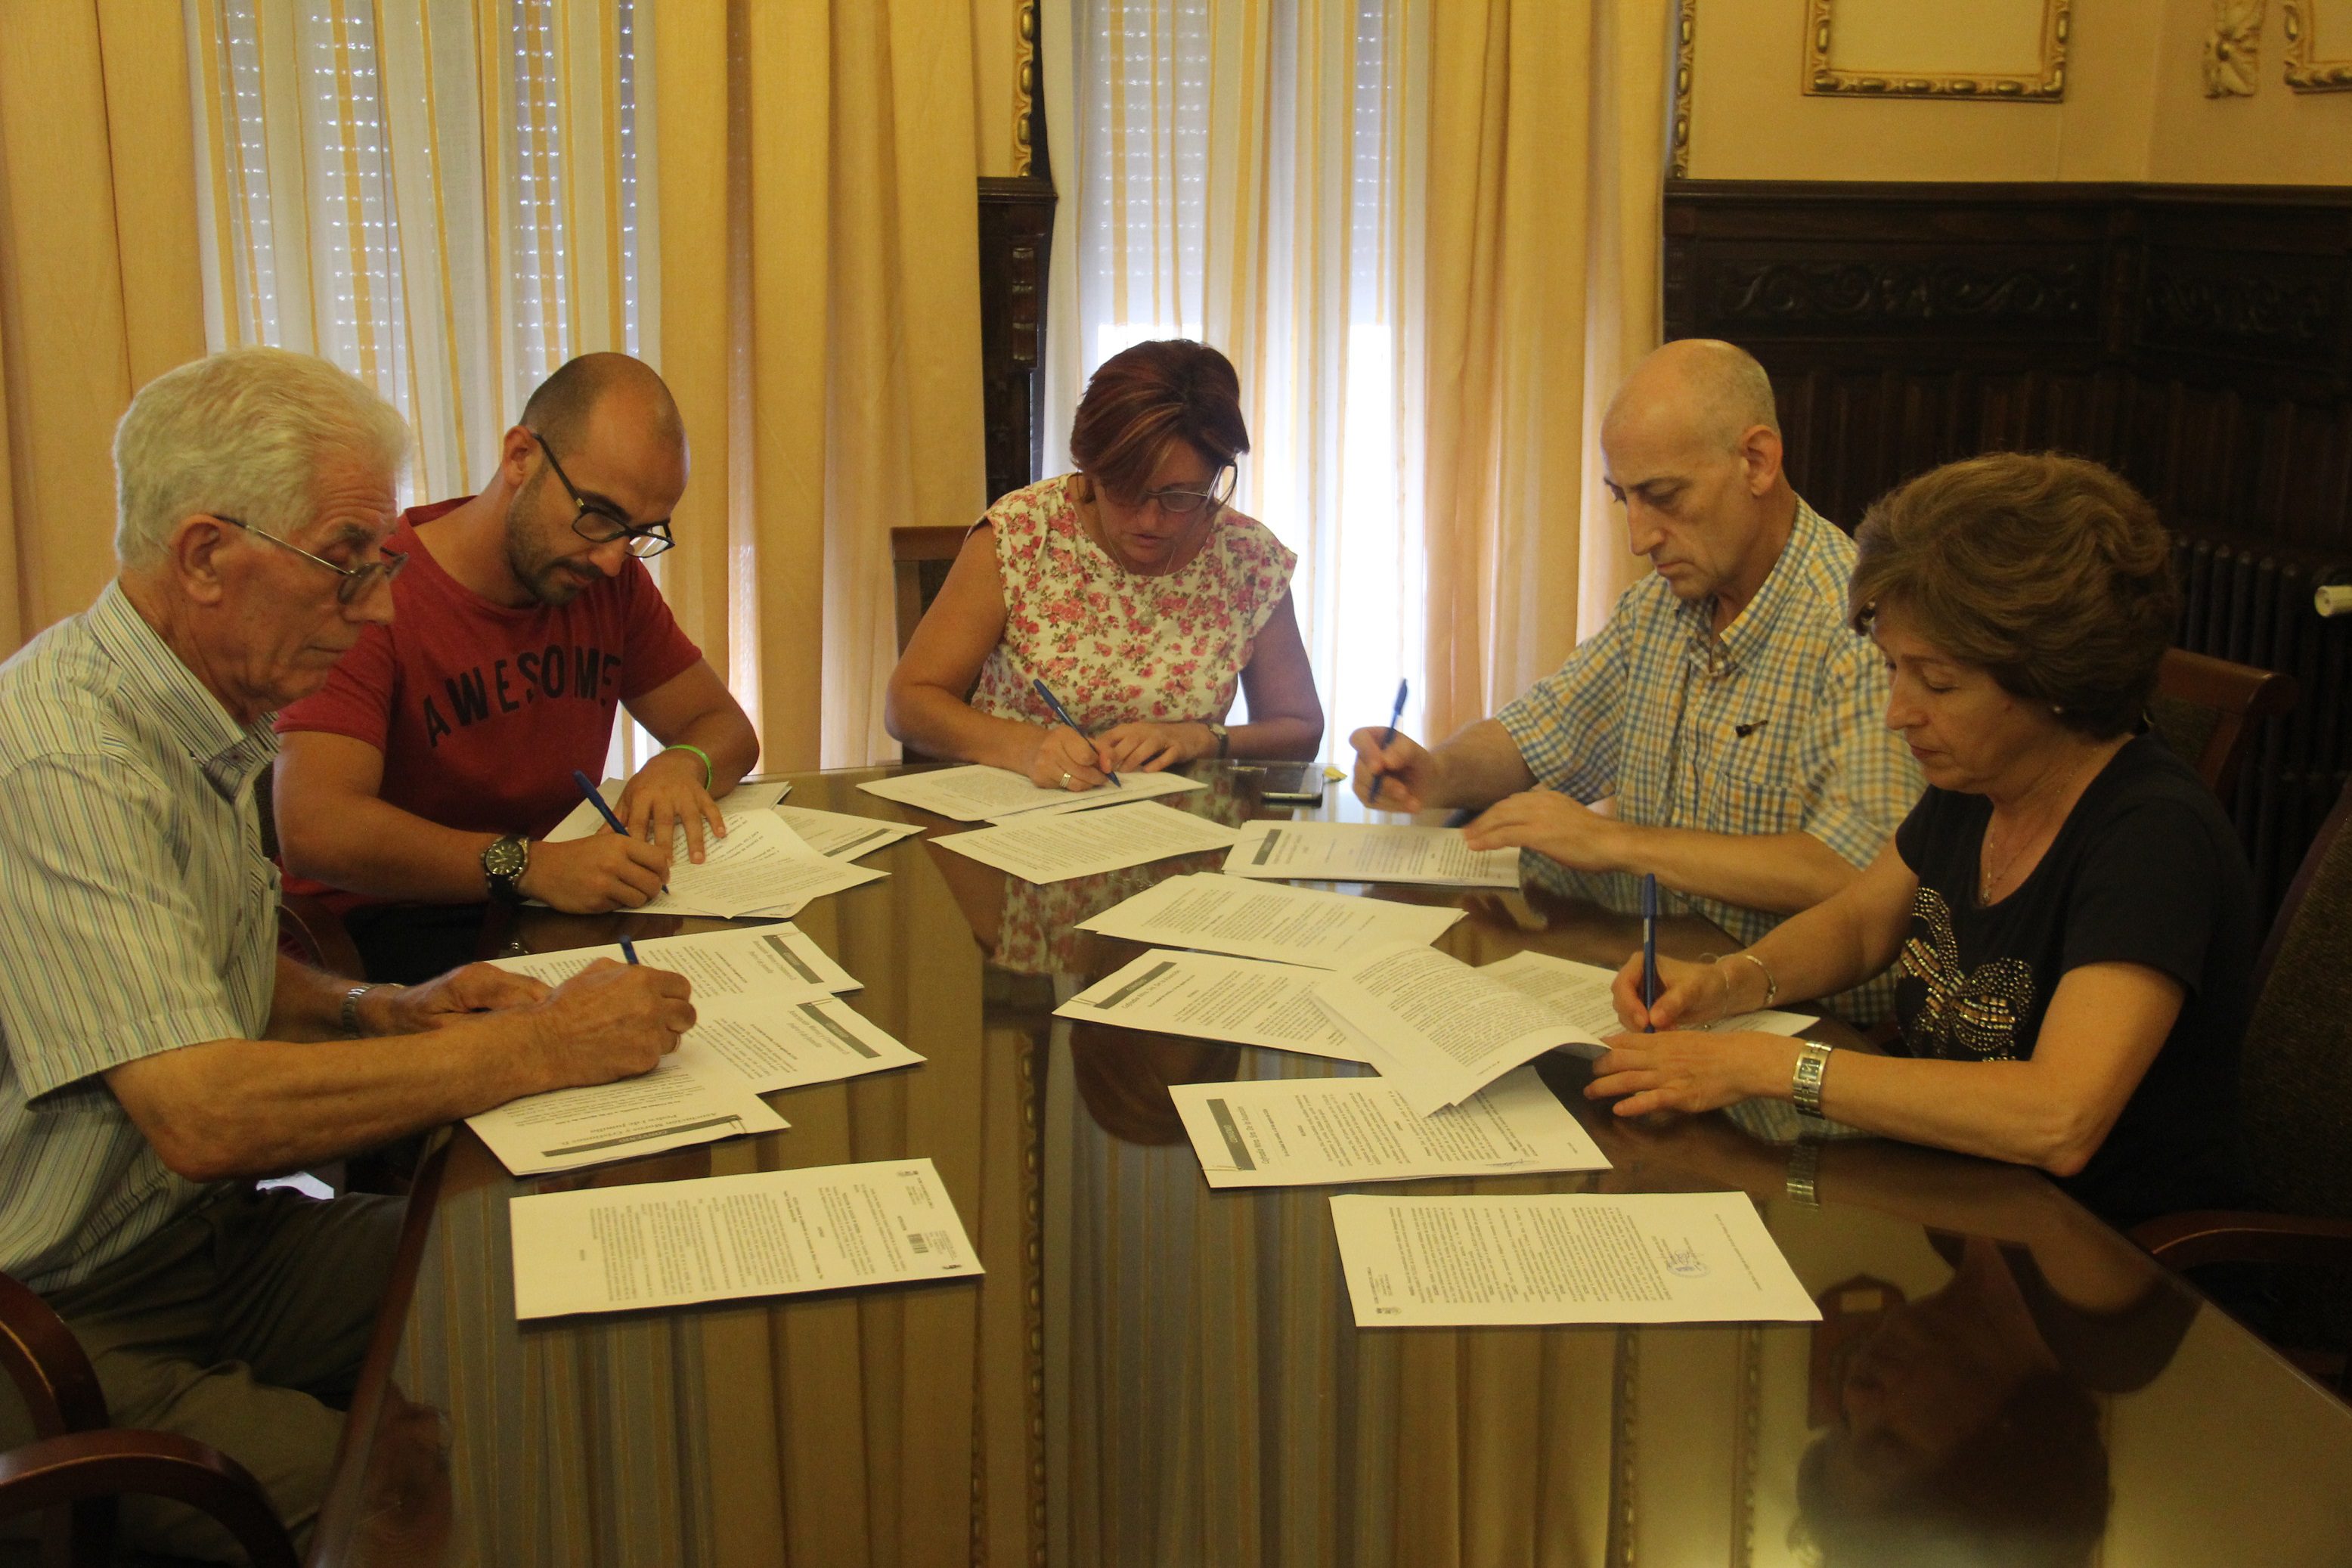 Firmados los convenios de colaboración entre Ayuntamiento y colectivos festeros